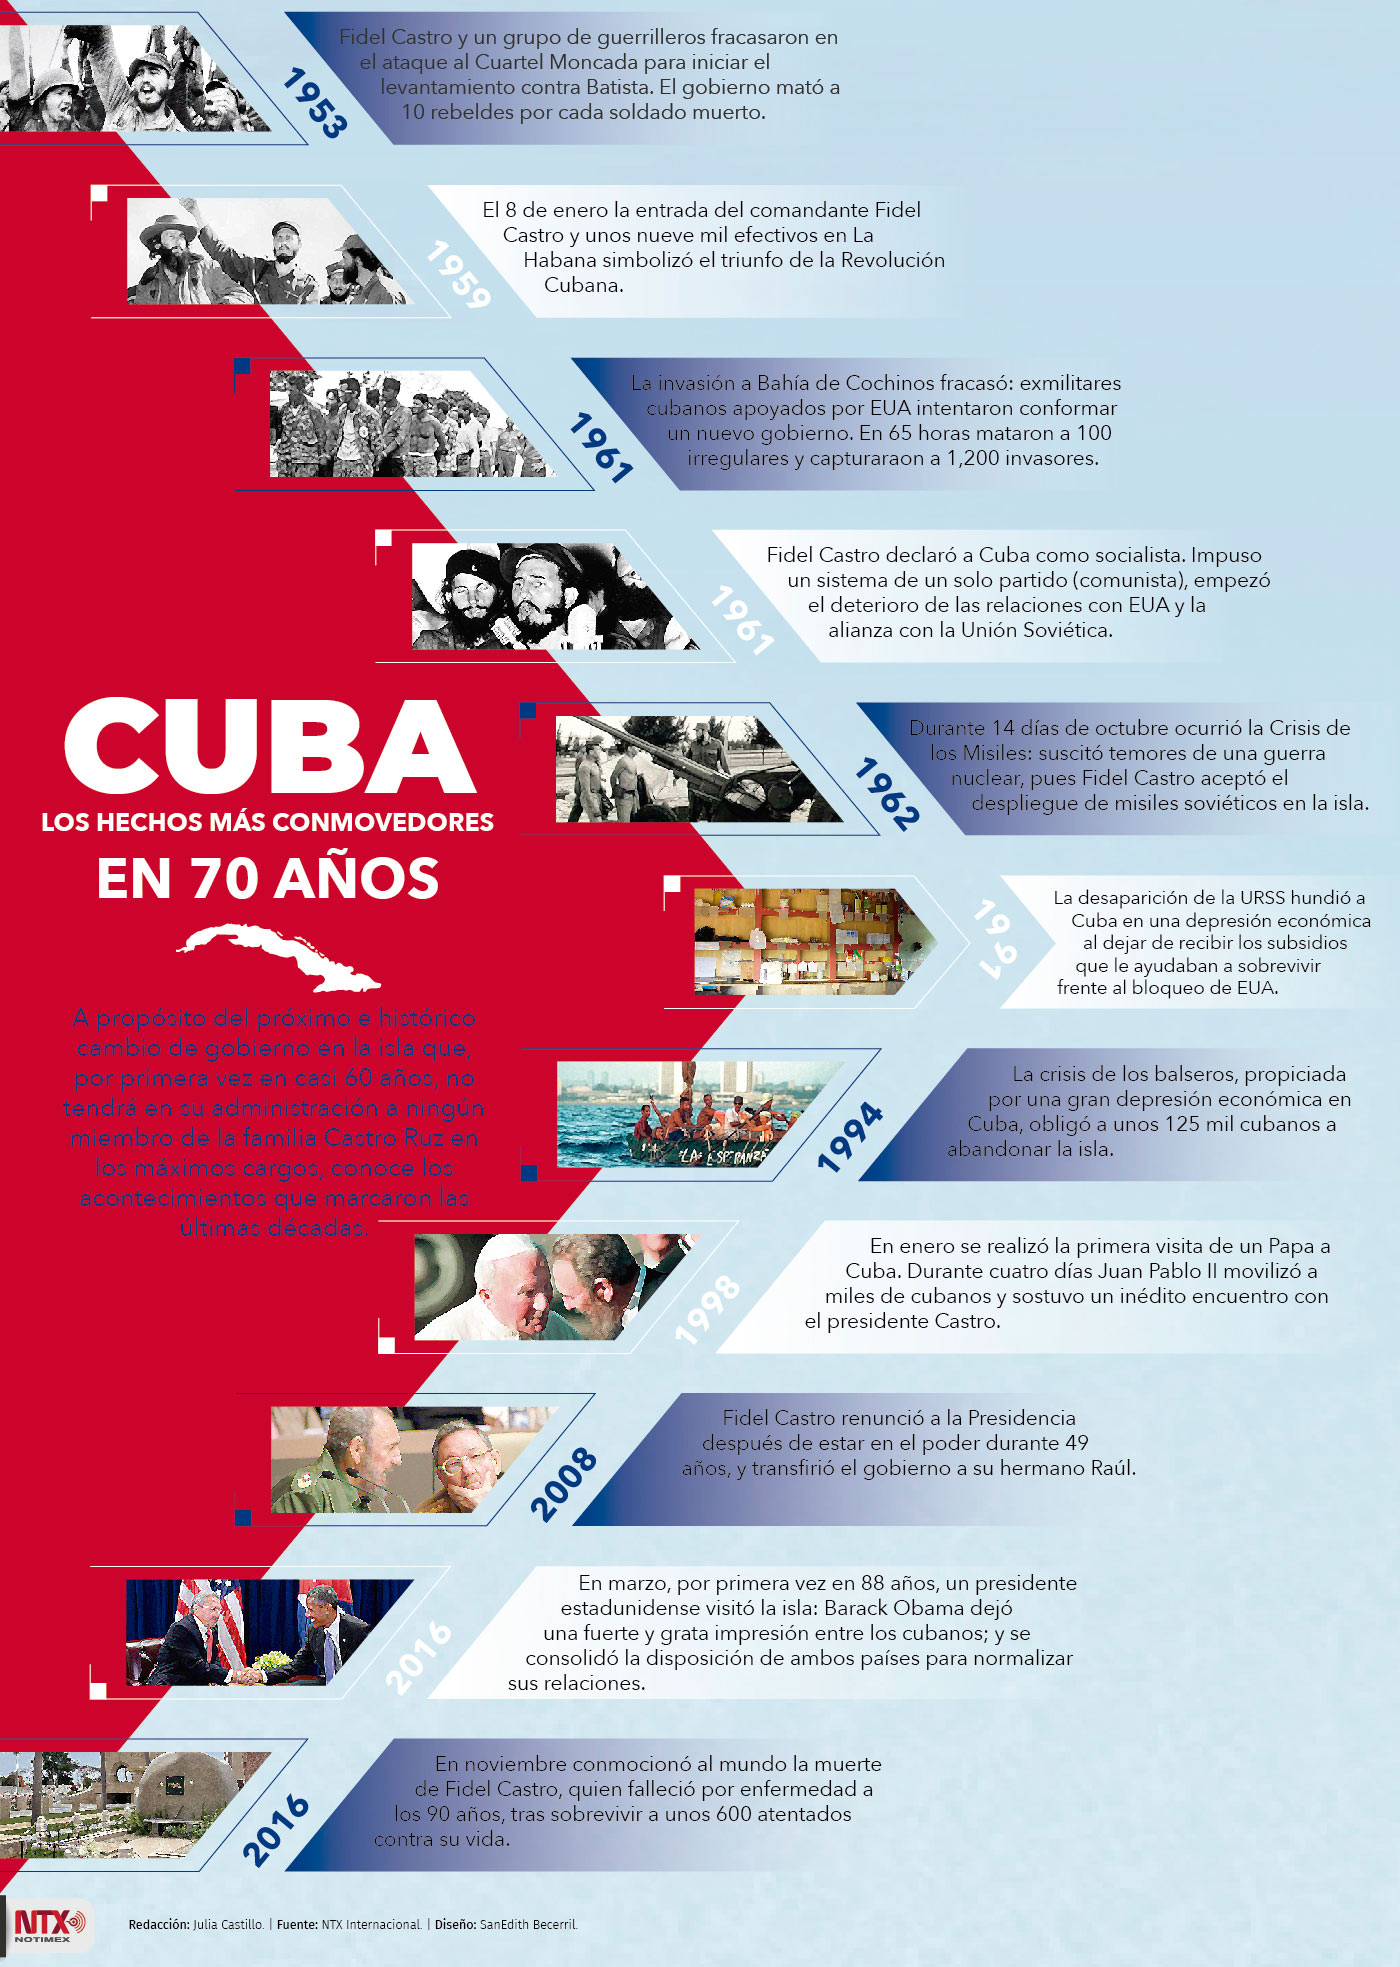 Cuba, los hechos ms conmovedores en 70 aos